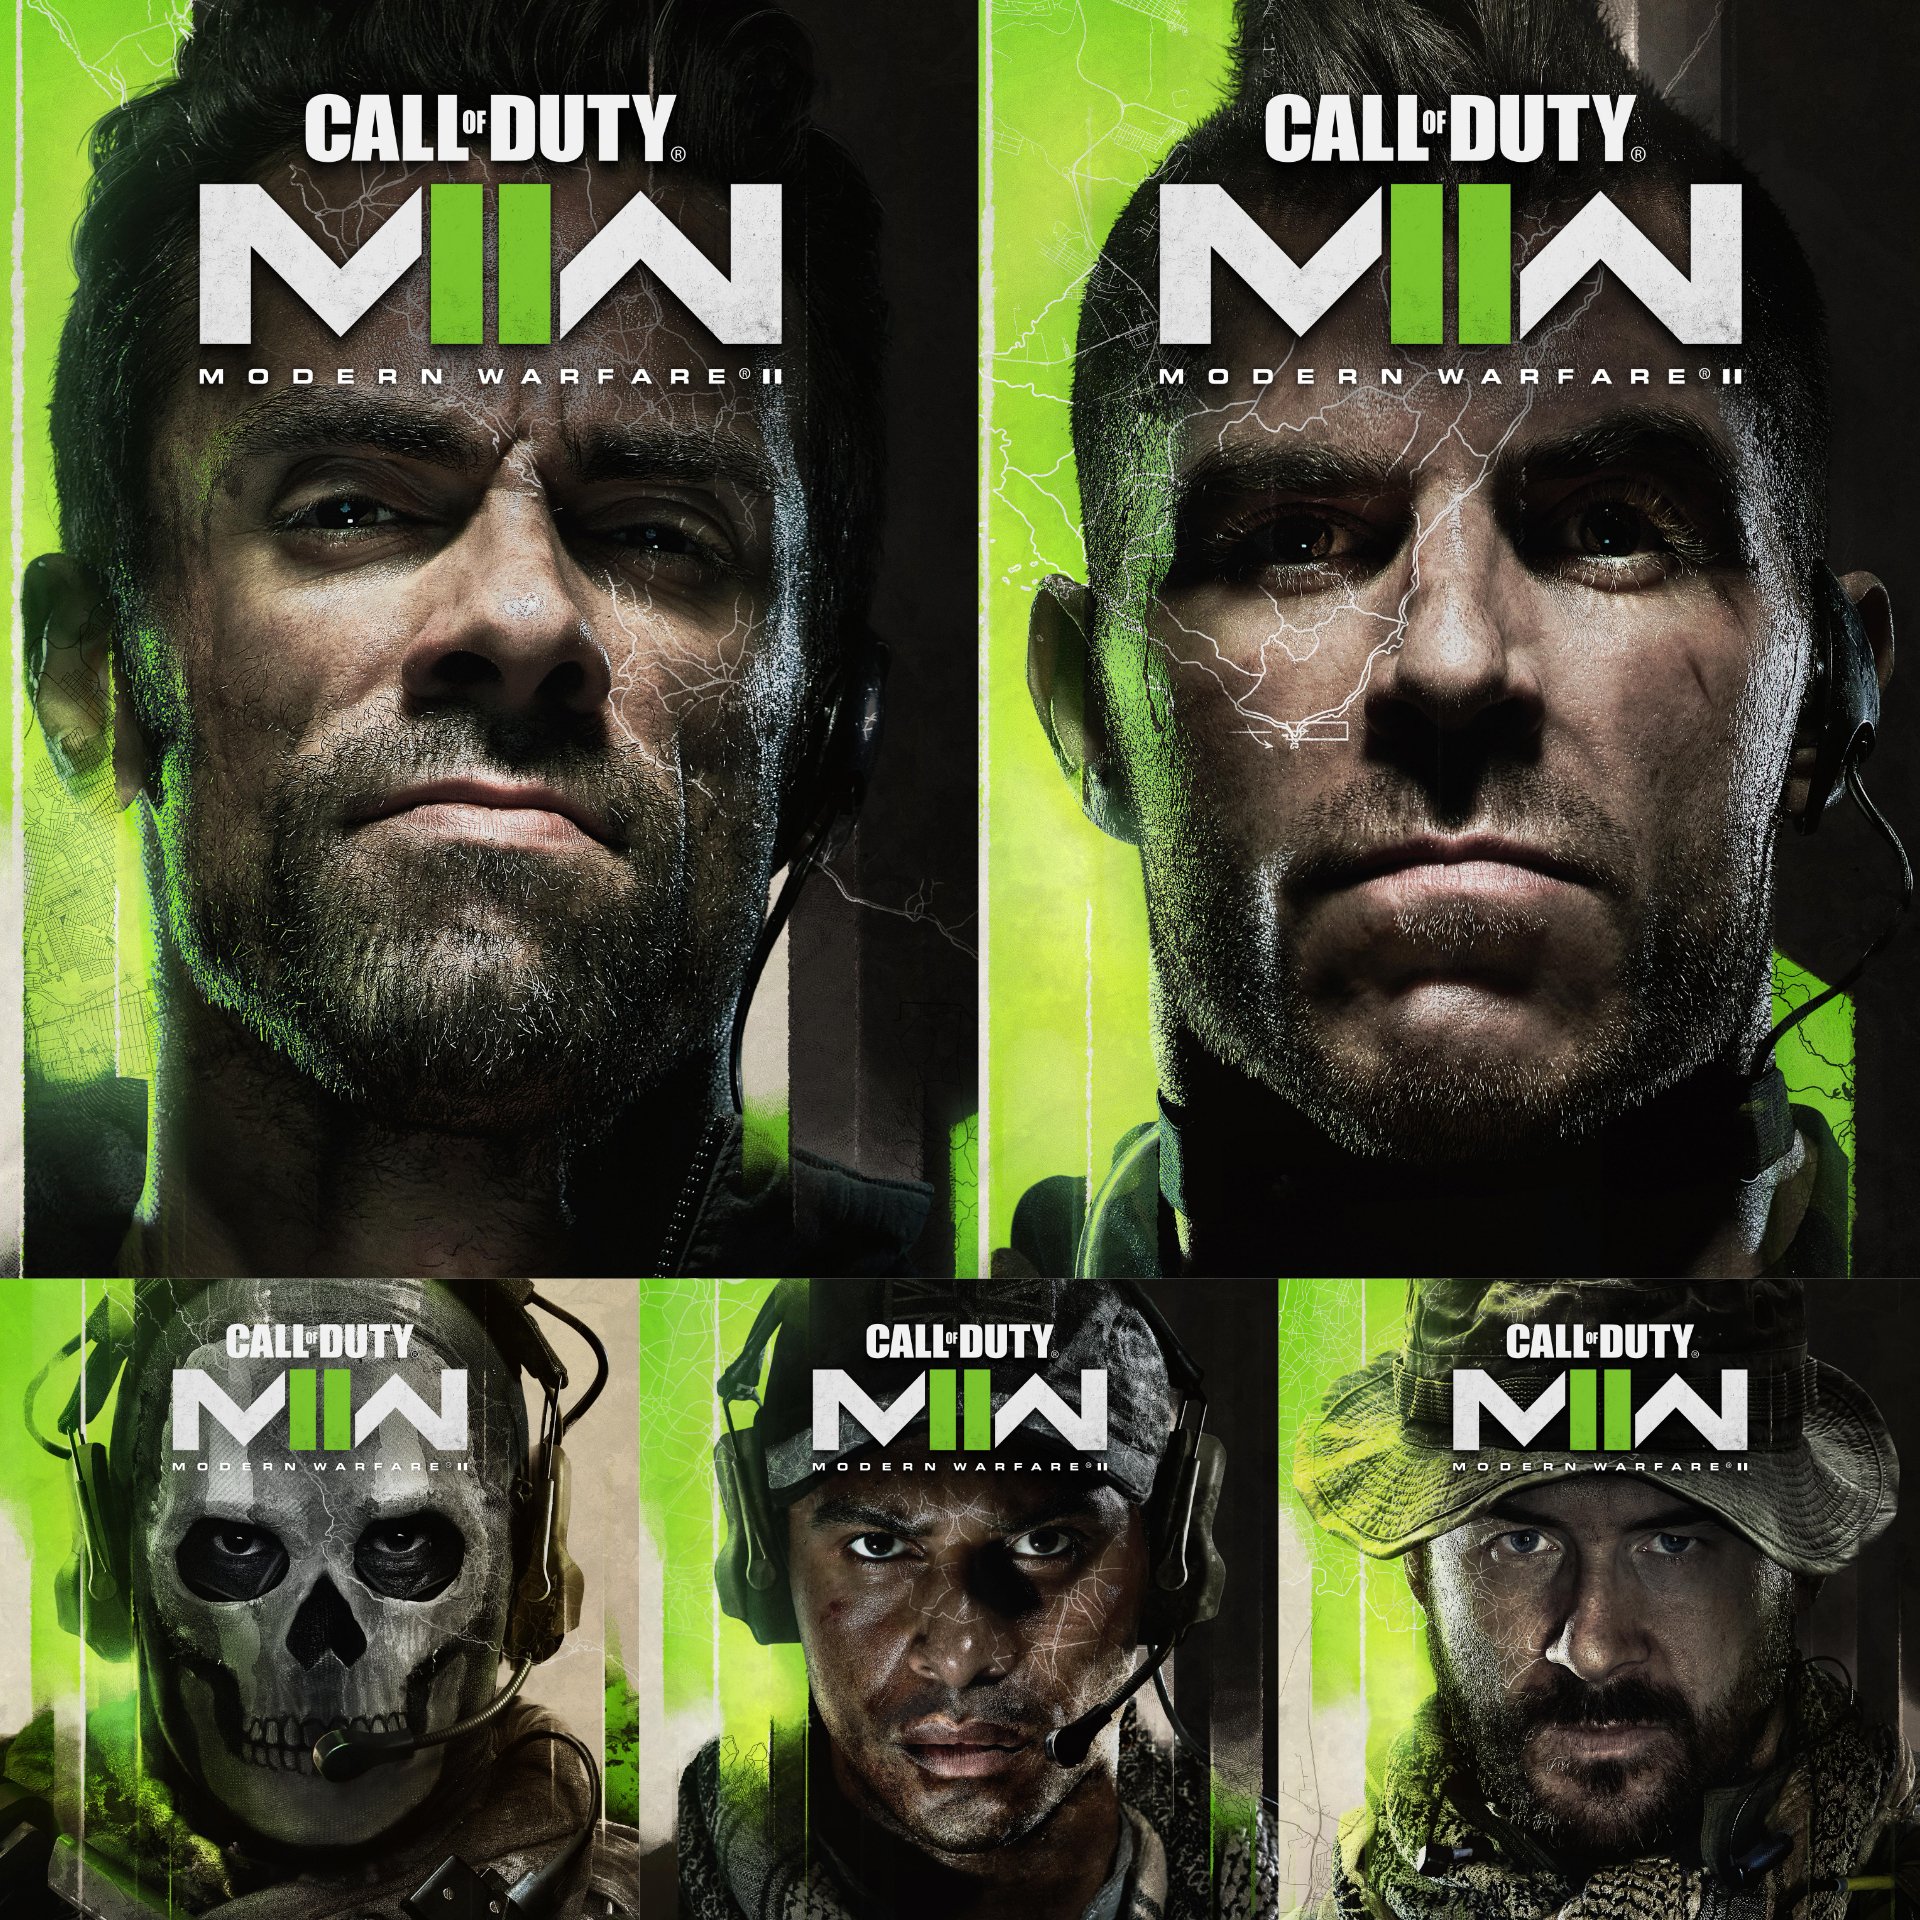 Call of Duty: Modern Warfare 2 - Cross-Gen Bundle PS4 PS5 